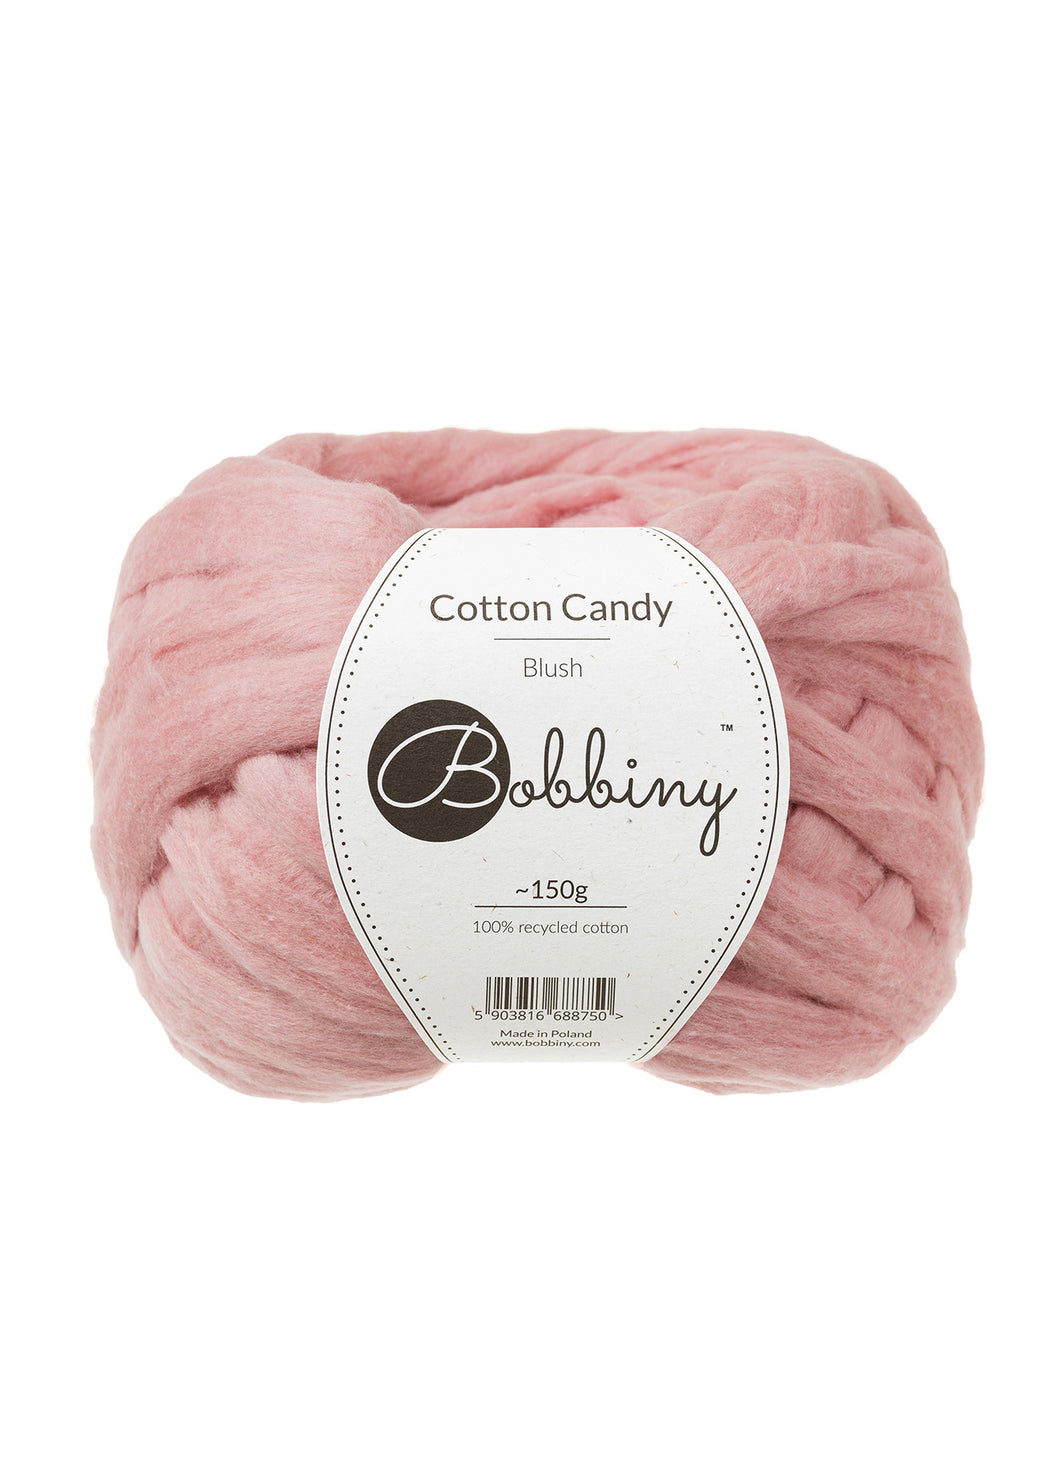 Cotton Candy Blush